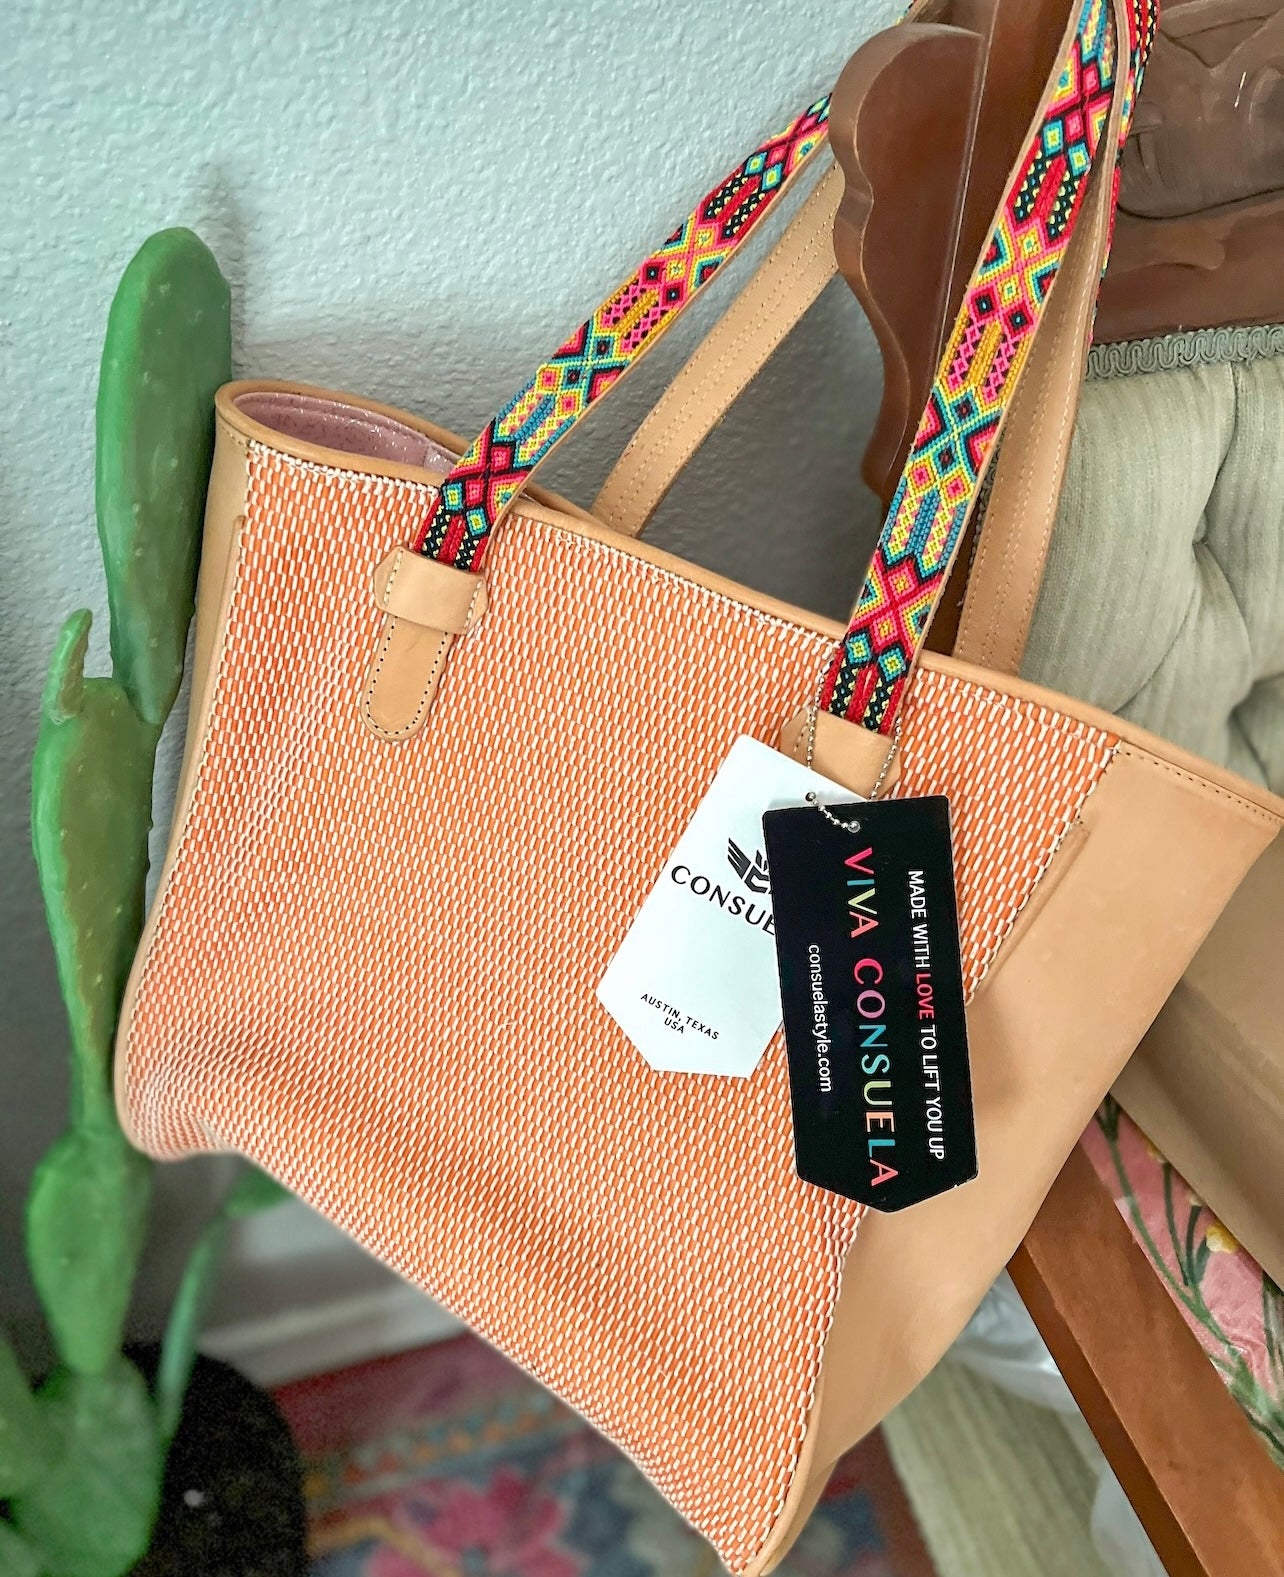 Shop Austin's largest collection Consuela bags